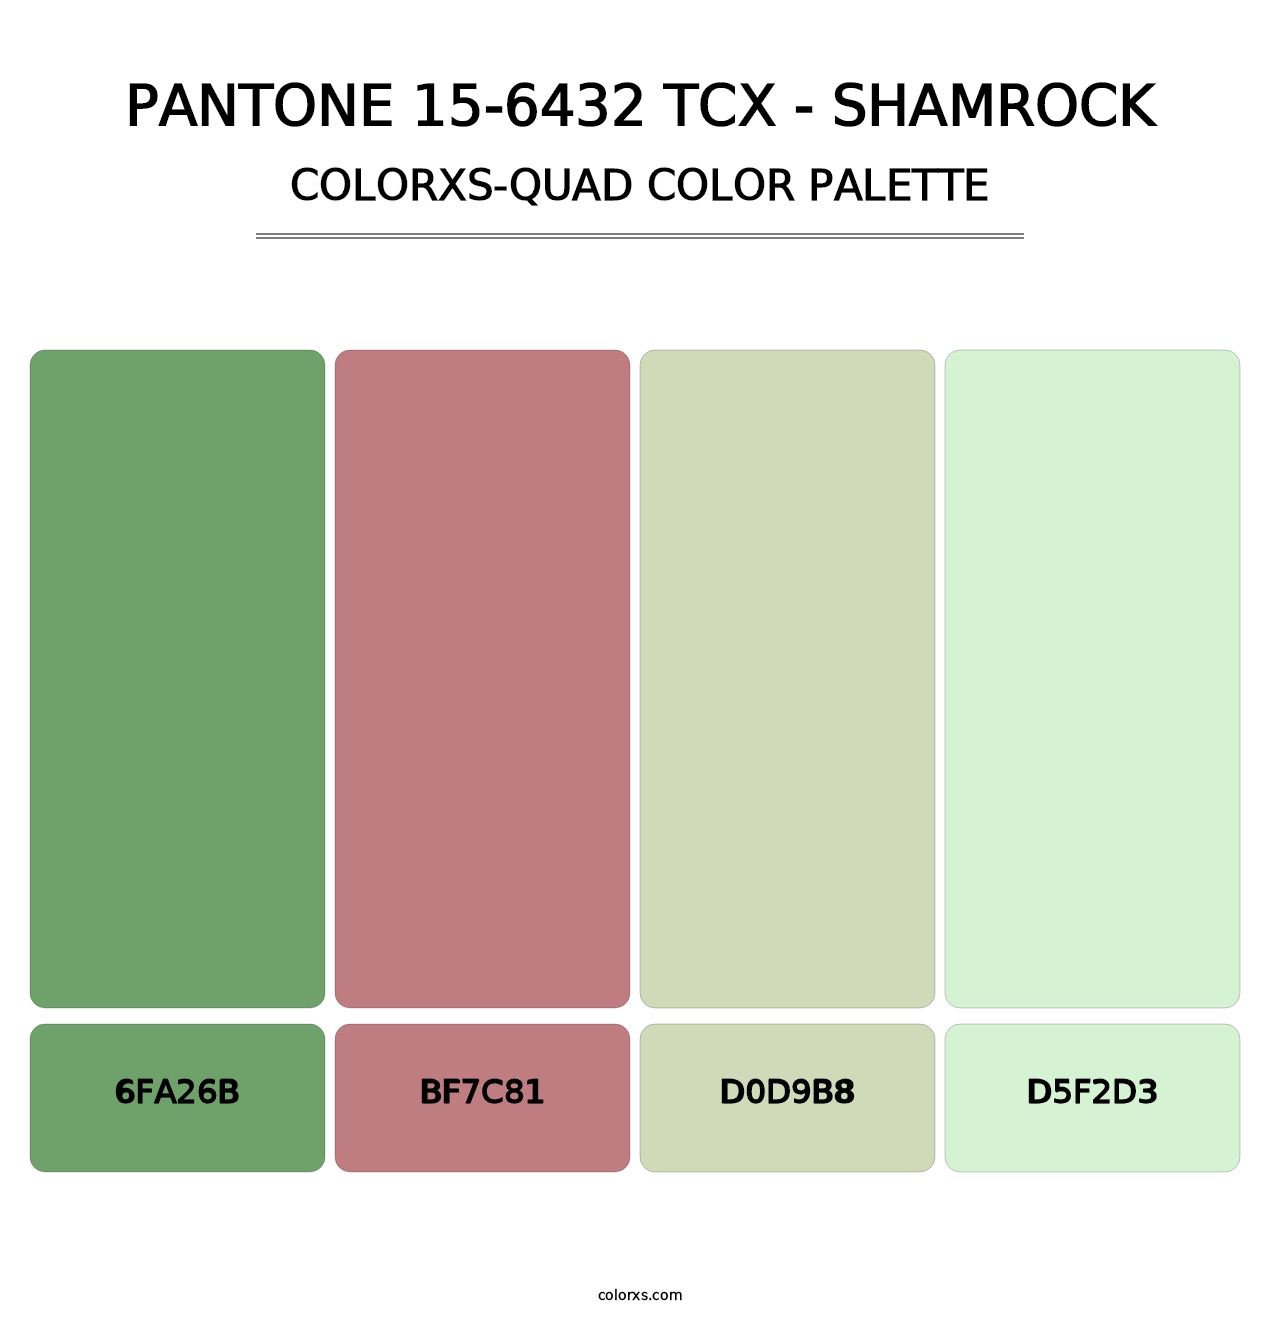 PANTONE 15-6432 TCX - Shamrock - Colorxs Quad Palette